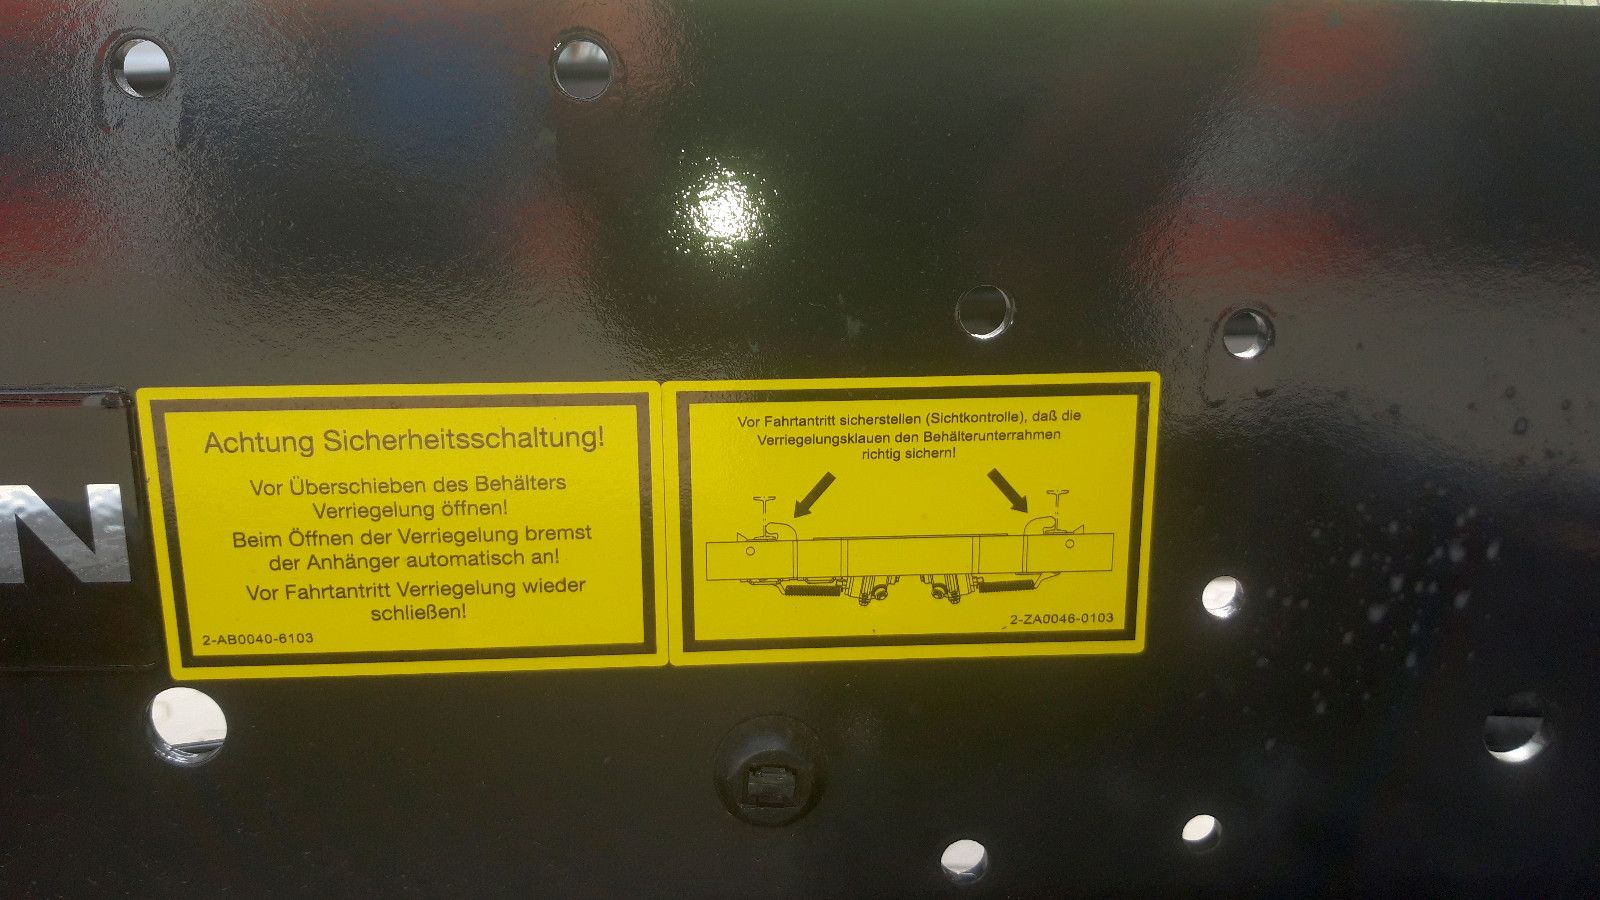 Fahrzeugabbildung Hüffermann HSA 20.71 Schlitten Anhänger 2x Sofort Verfügbar